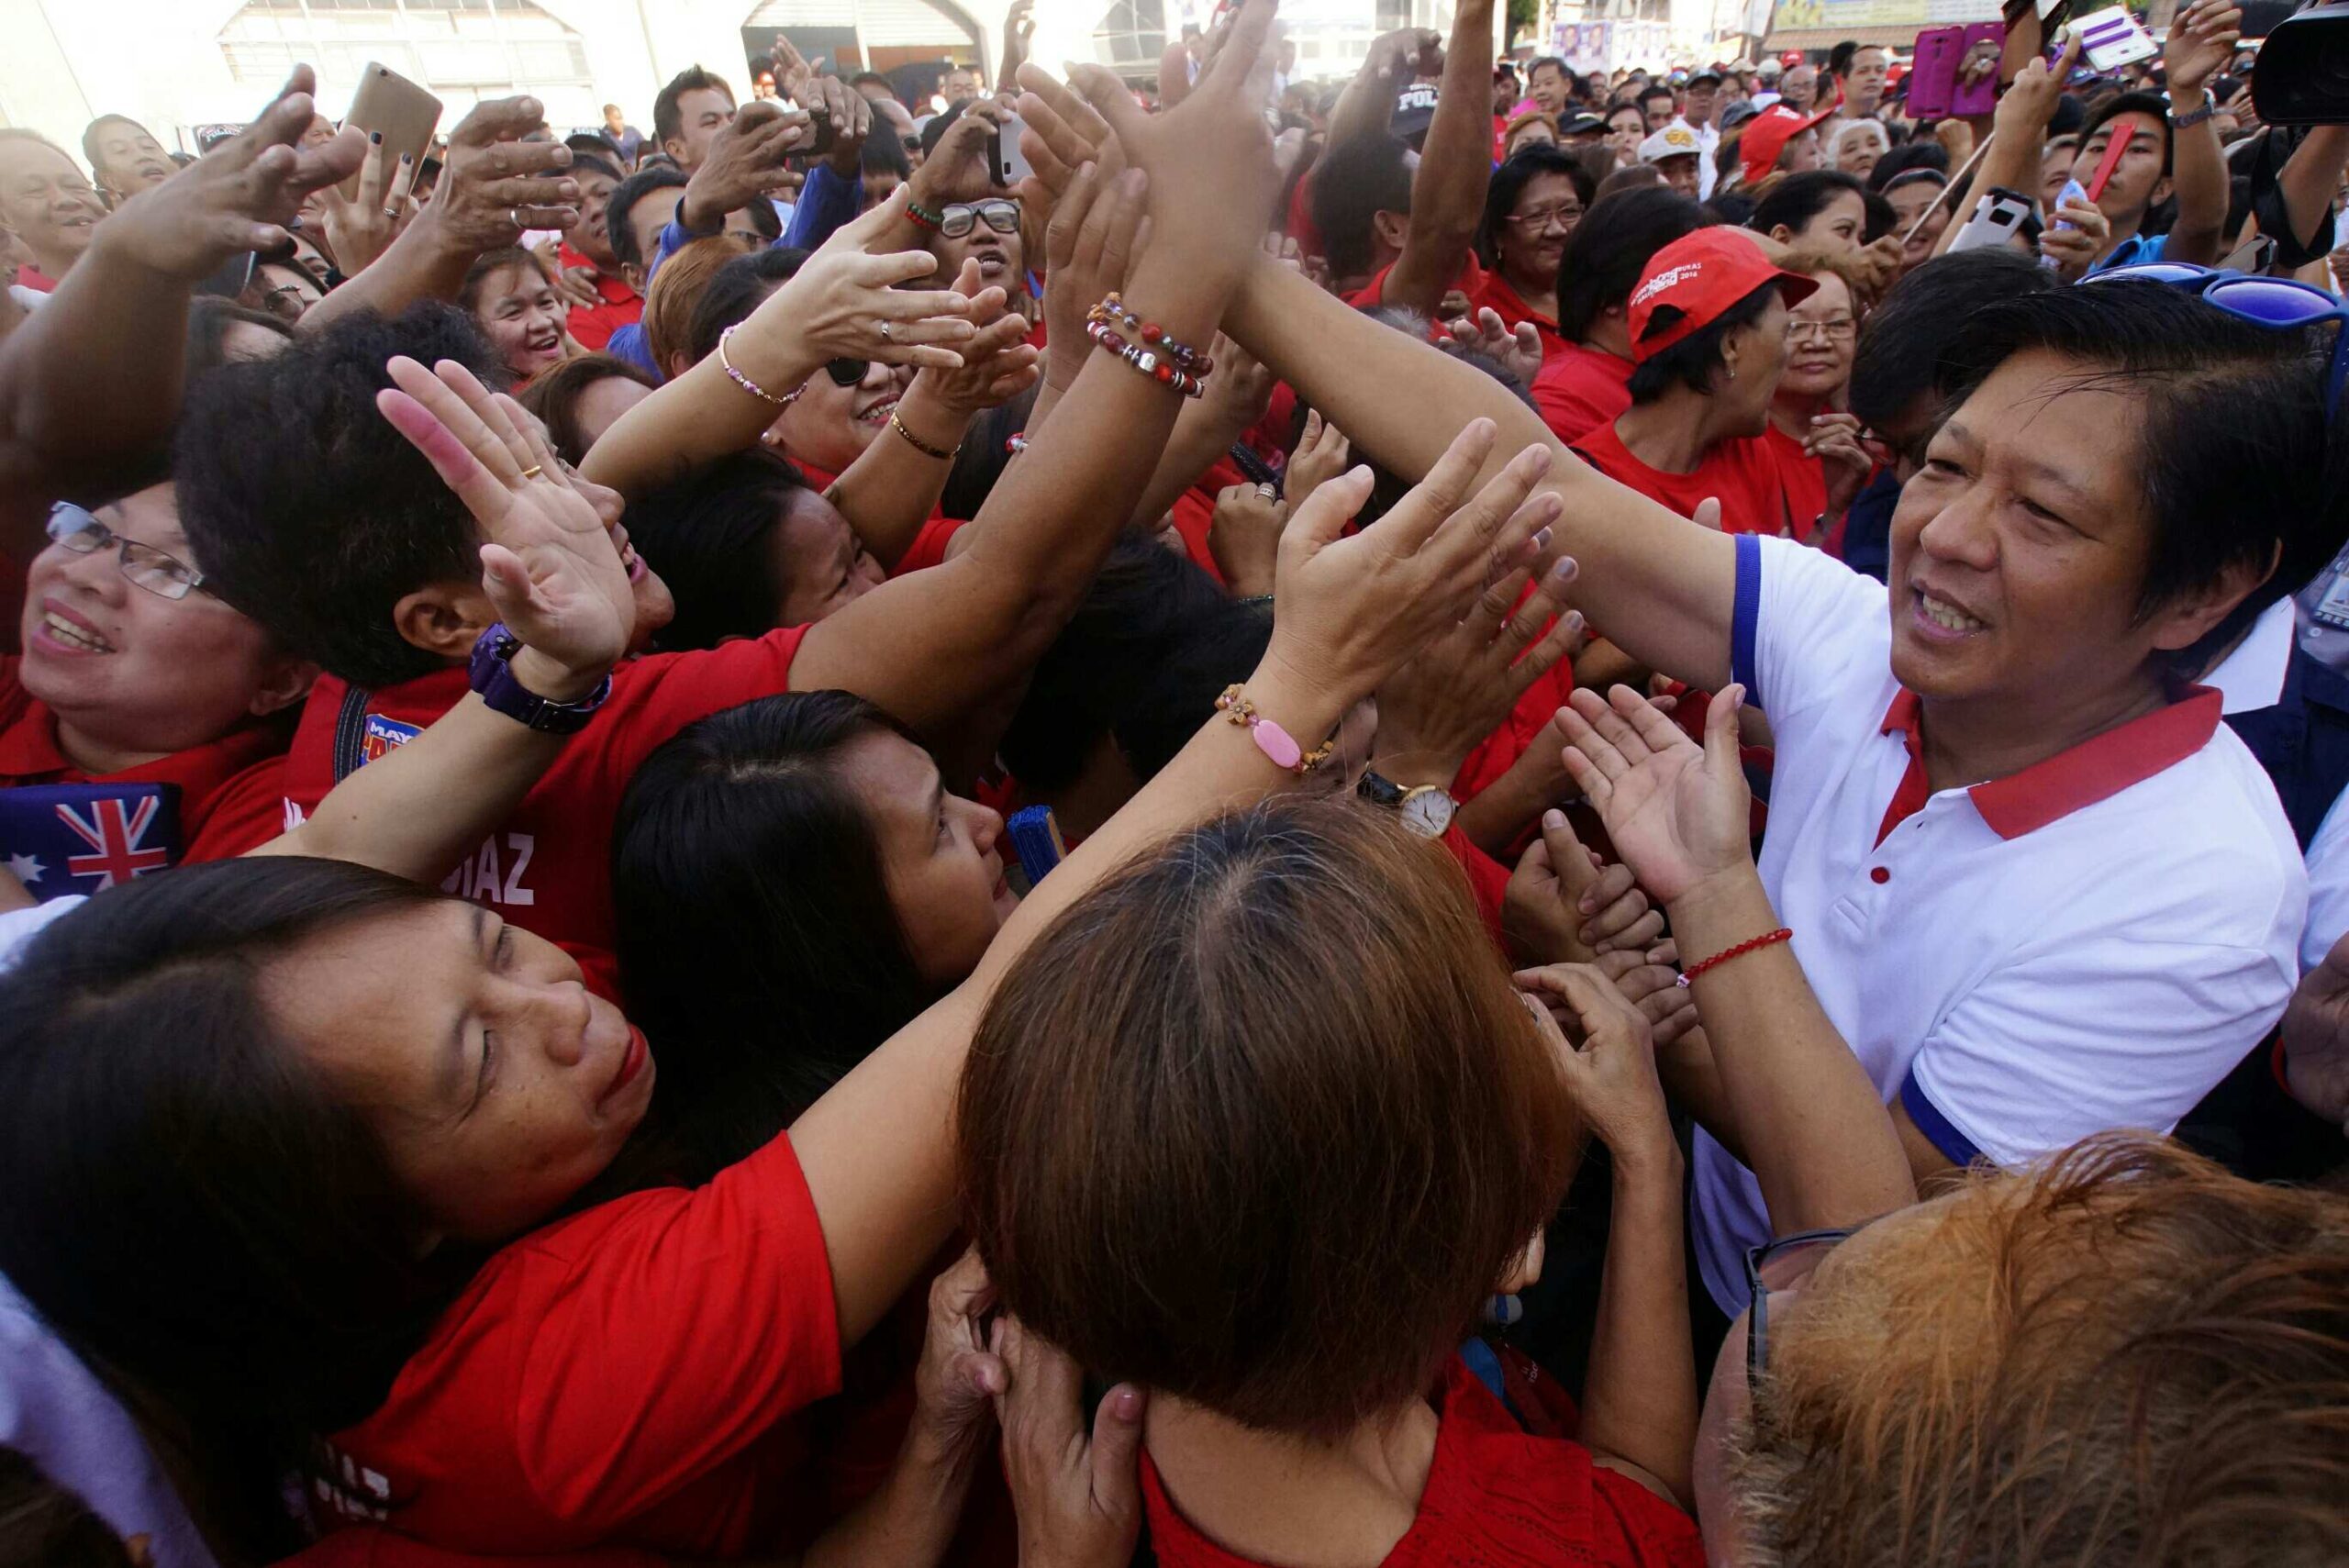 Bongbong Marcos prepared for mudslinging at VP debate